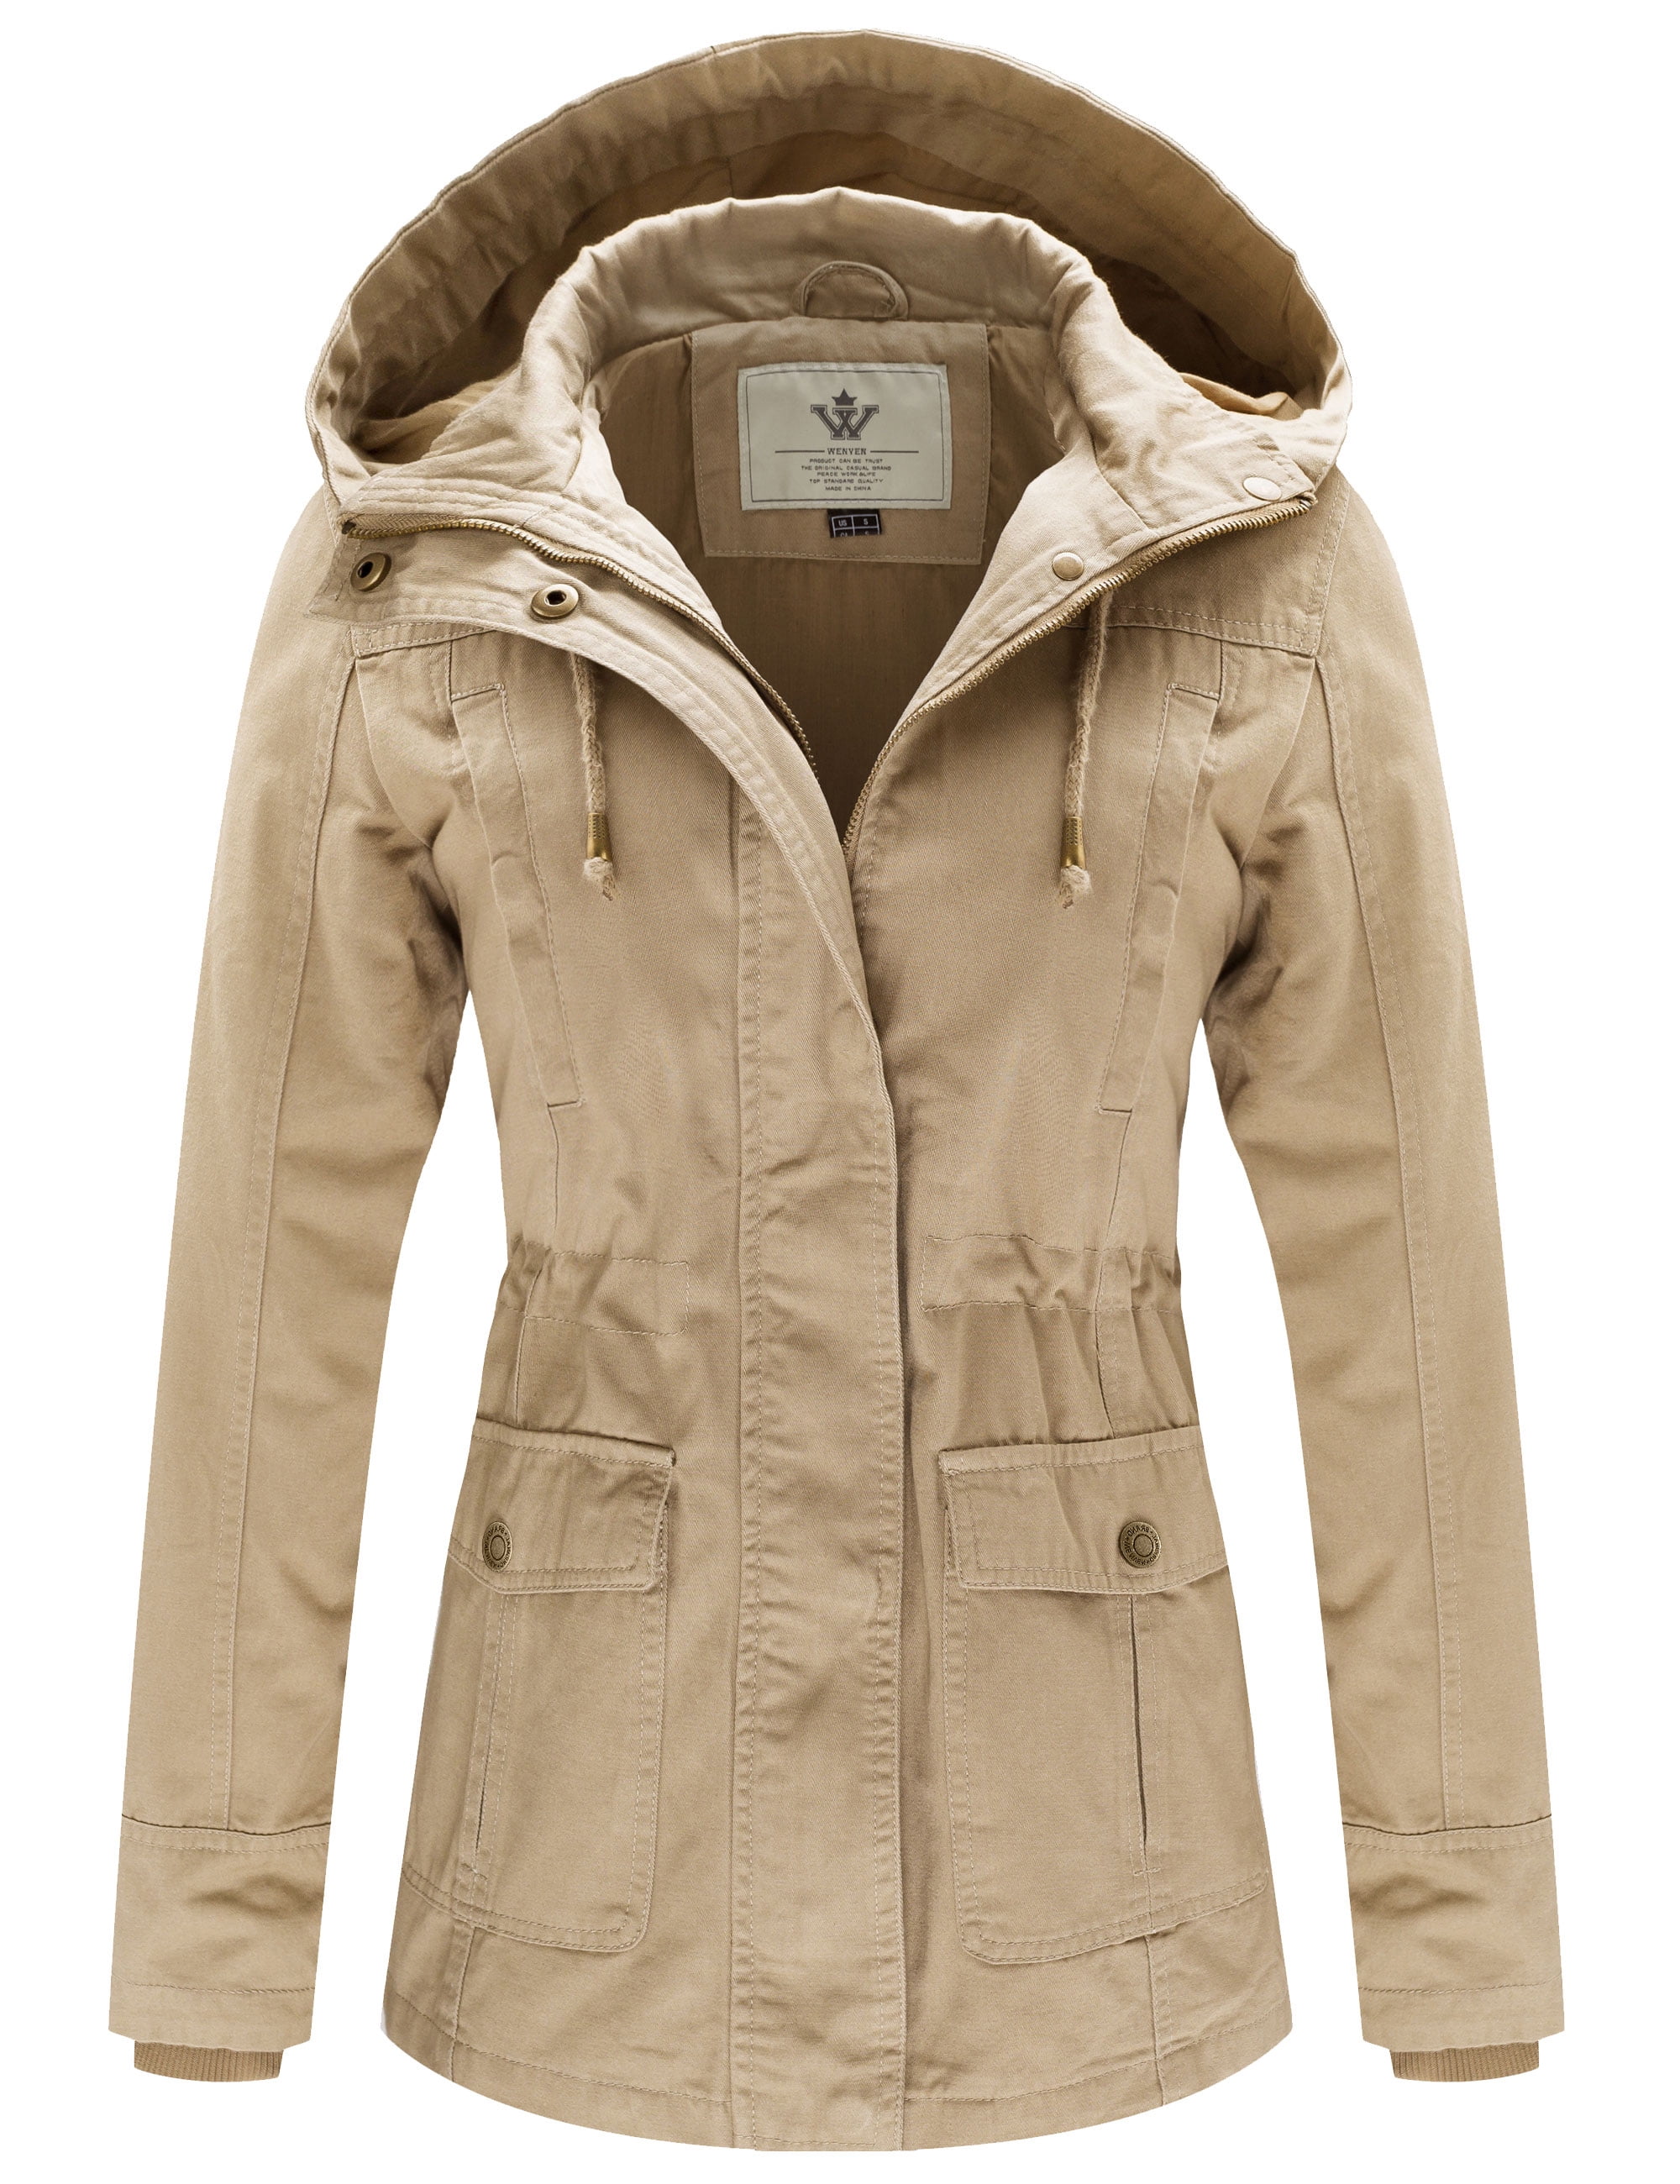 bevind zich Inschrijven Rustiek WenVen Women's Lightweight Cotton Casual Military Coat Anorak Jacket (Khaki,  XL) - Walmart.com